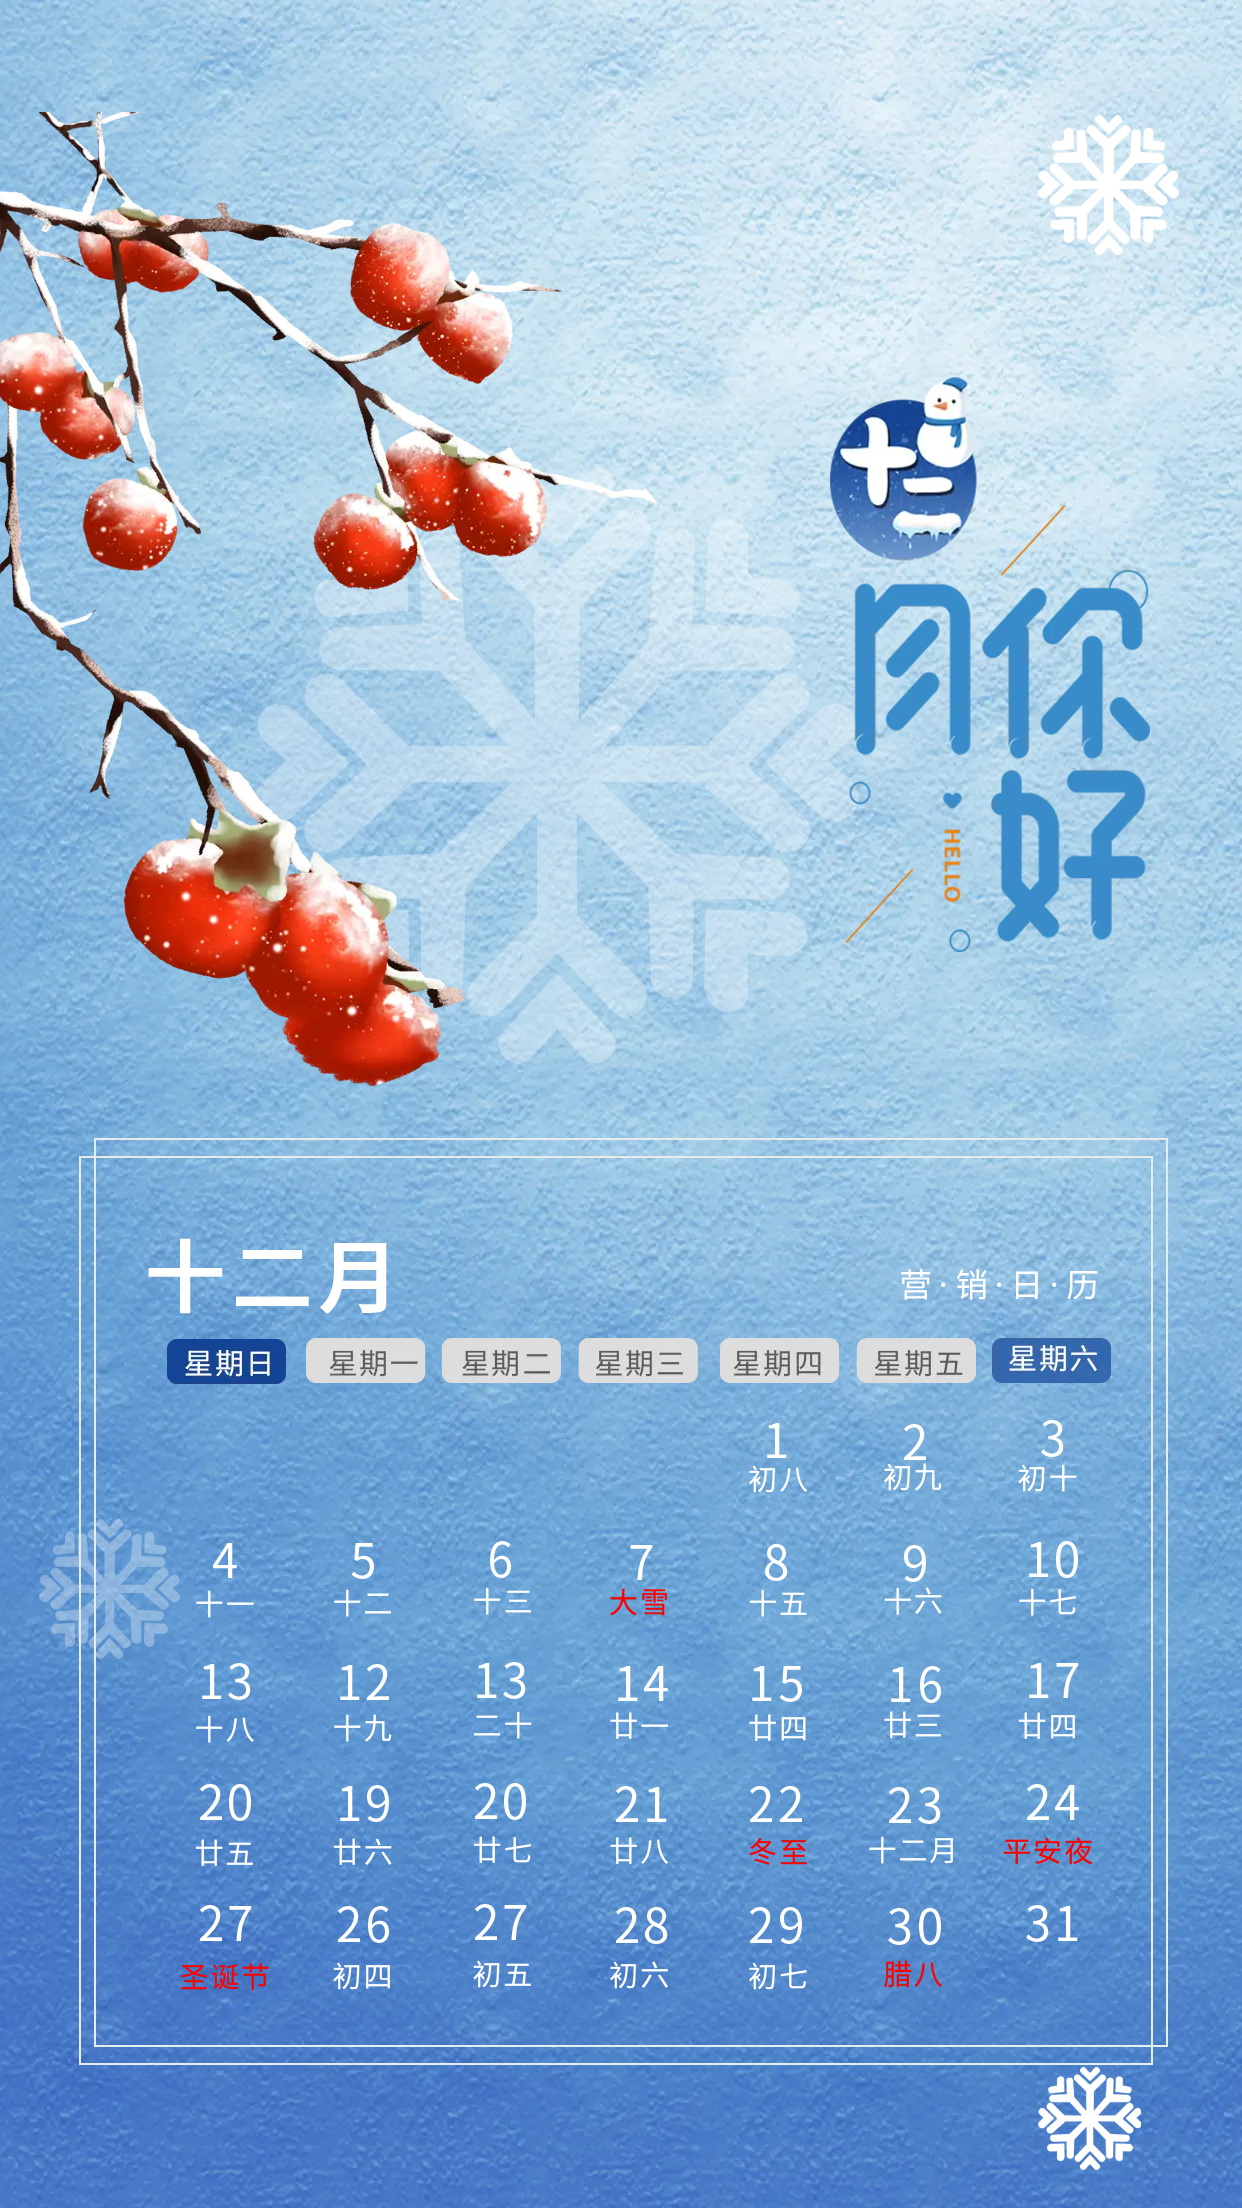 十二月你好营销日历手机海报